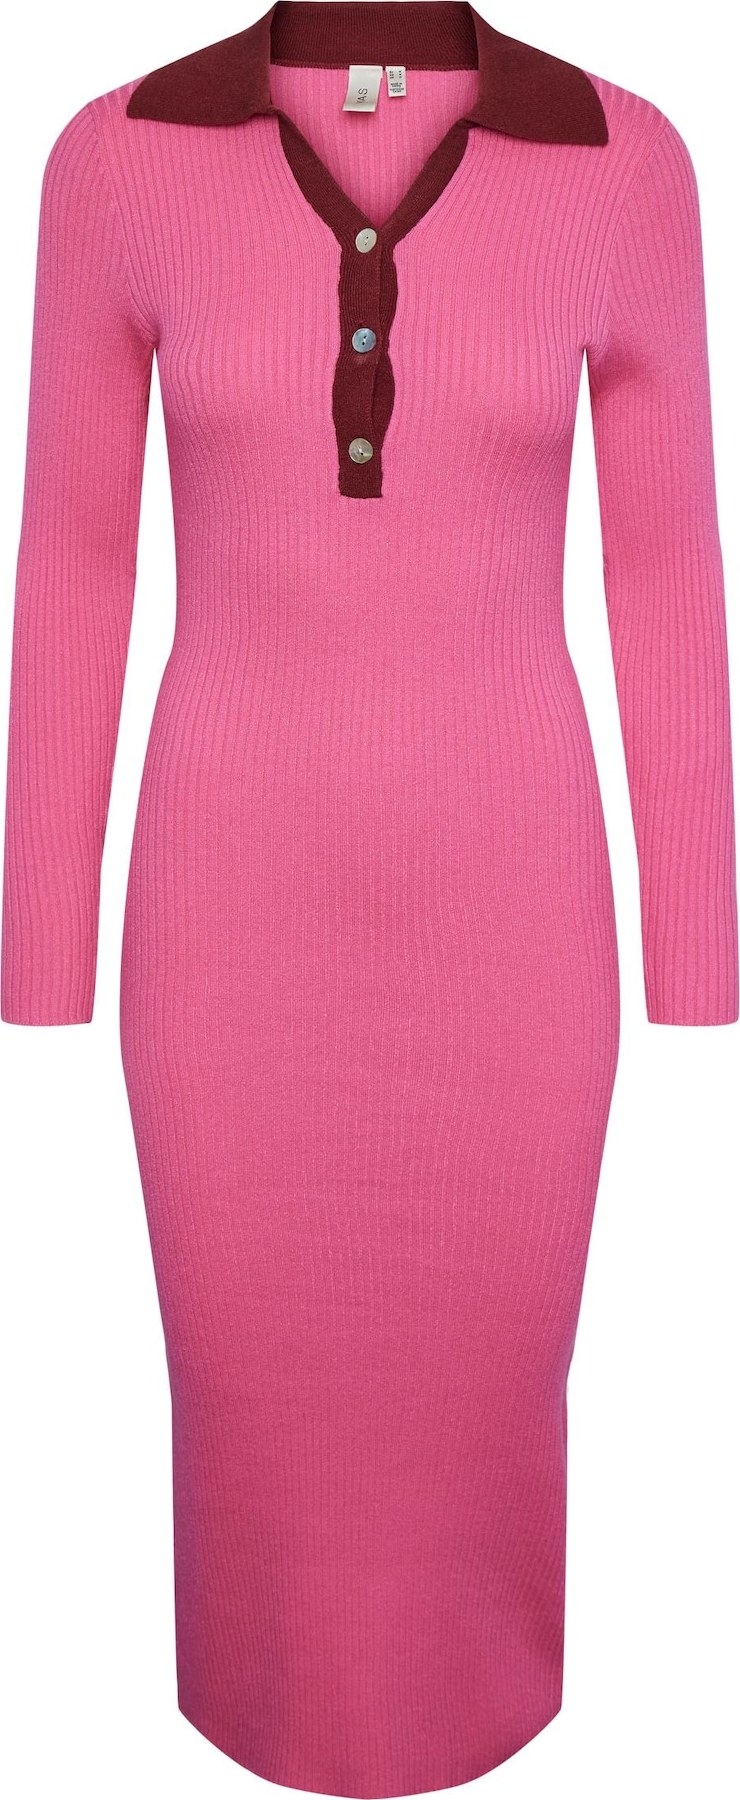 Y.A.S Úpletové šaty 'Minna' světle růžová / burgundská červeň